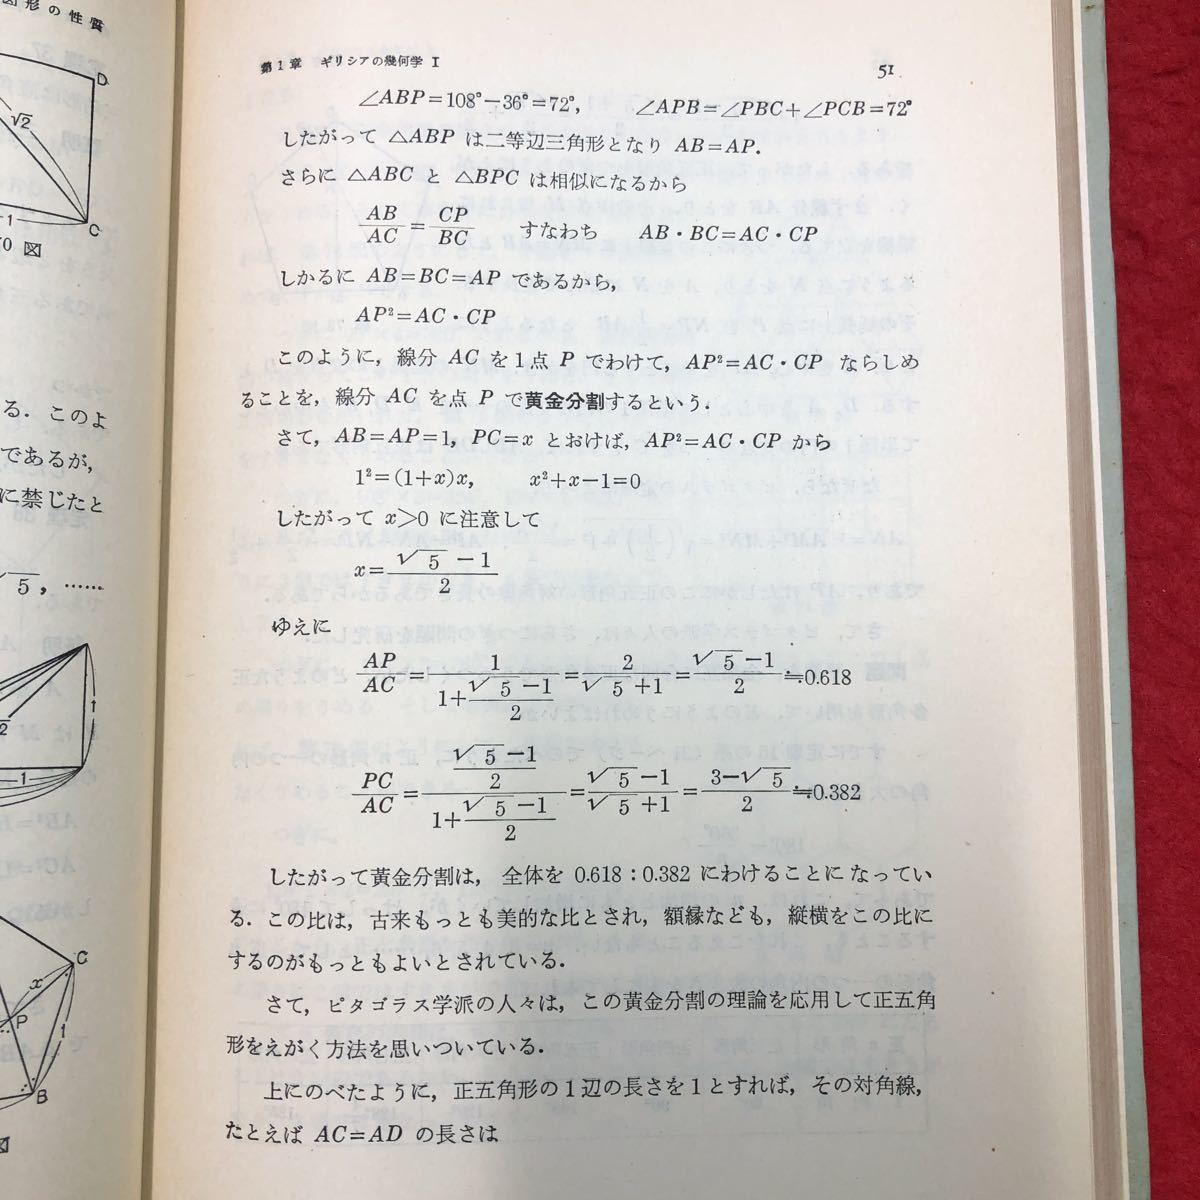 S6h-095 幾何Ⅰ 新初等数学講座 第2巻 編者 小倉金之助 1957年12月15日